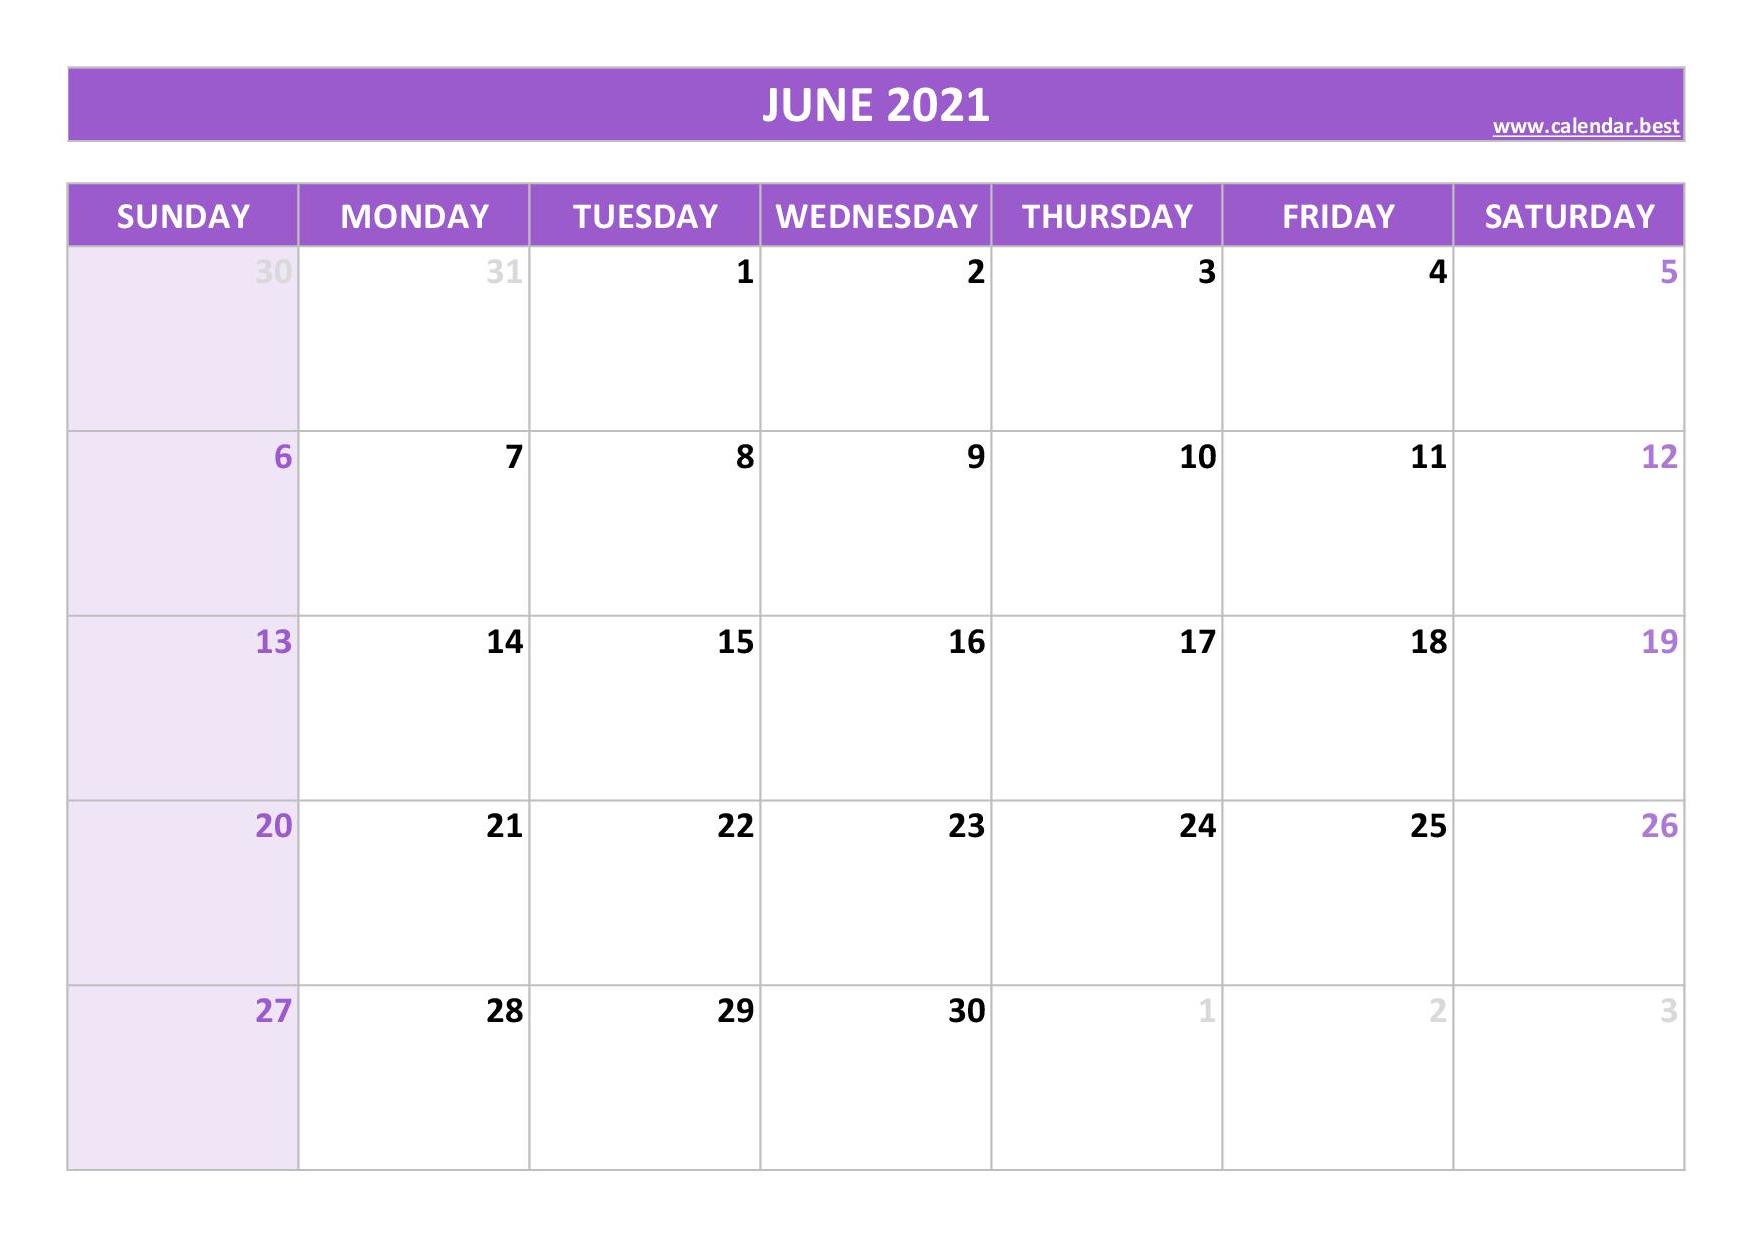 June 2021 kalender